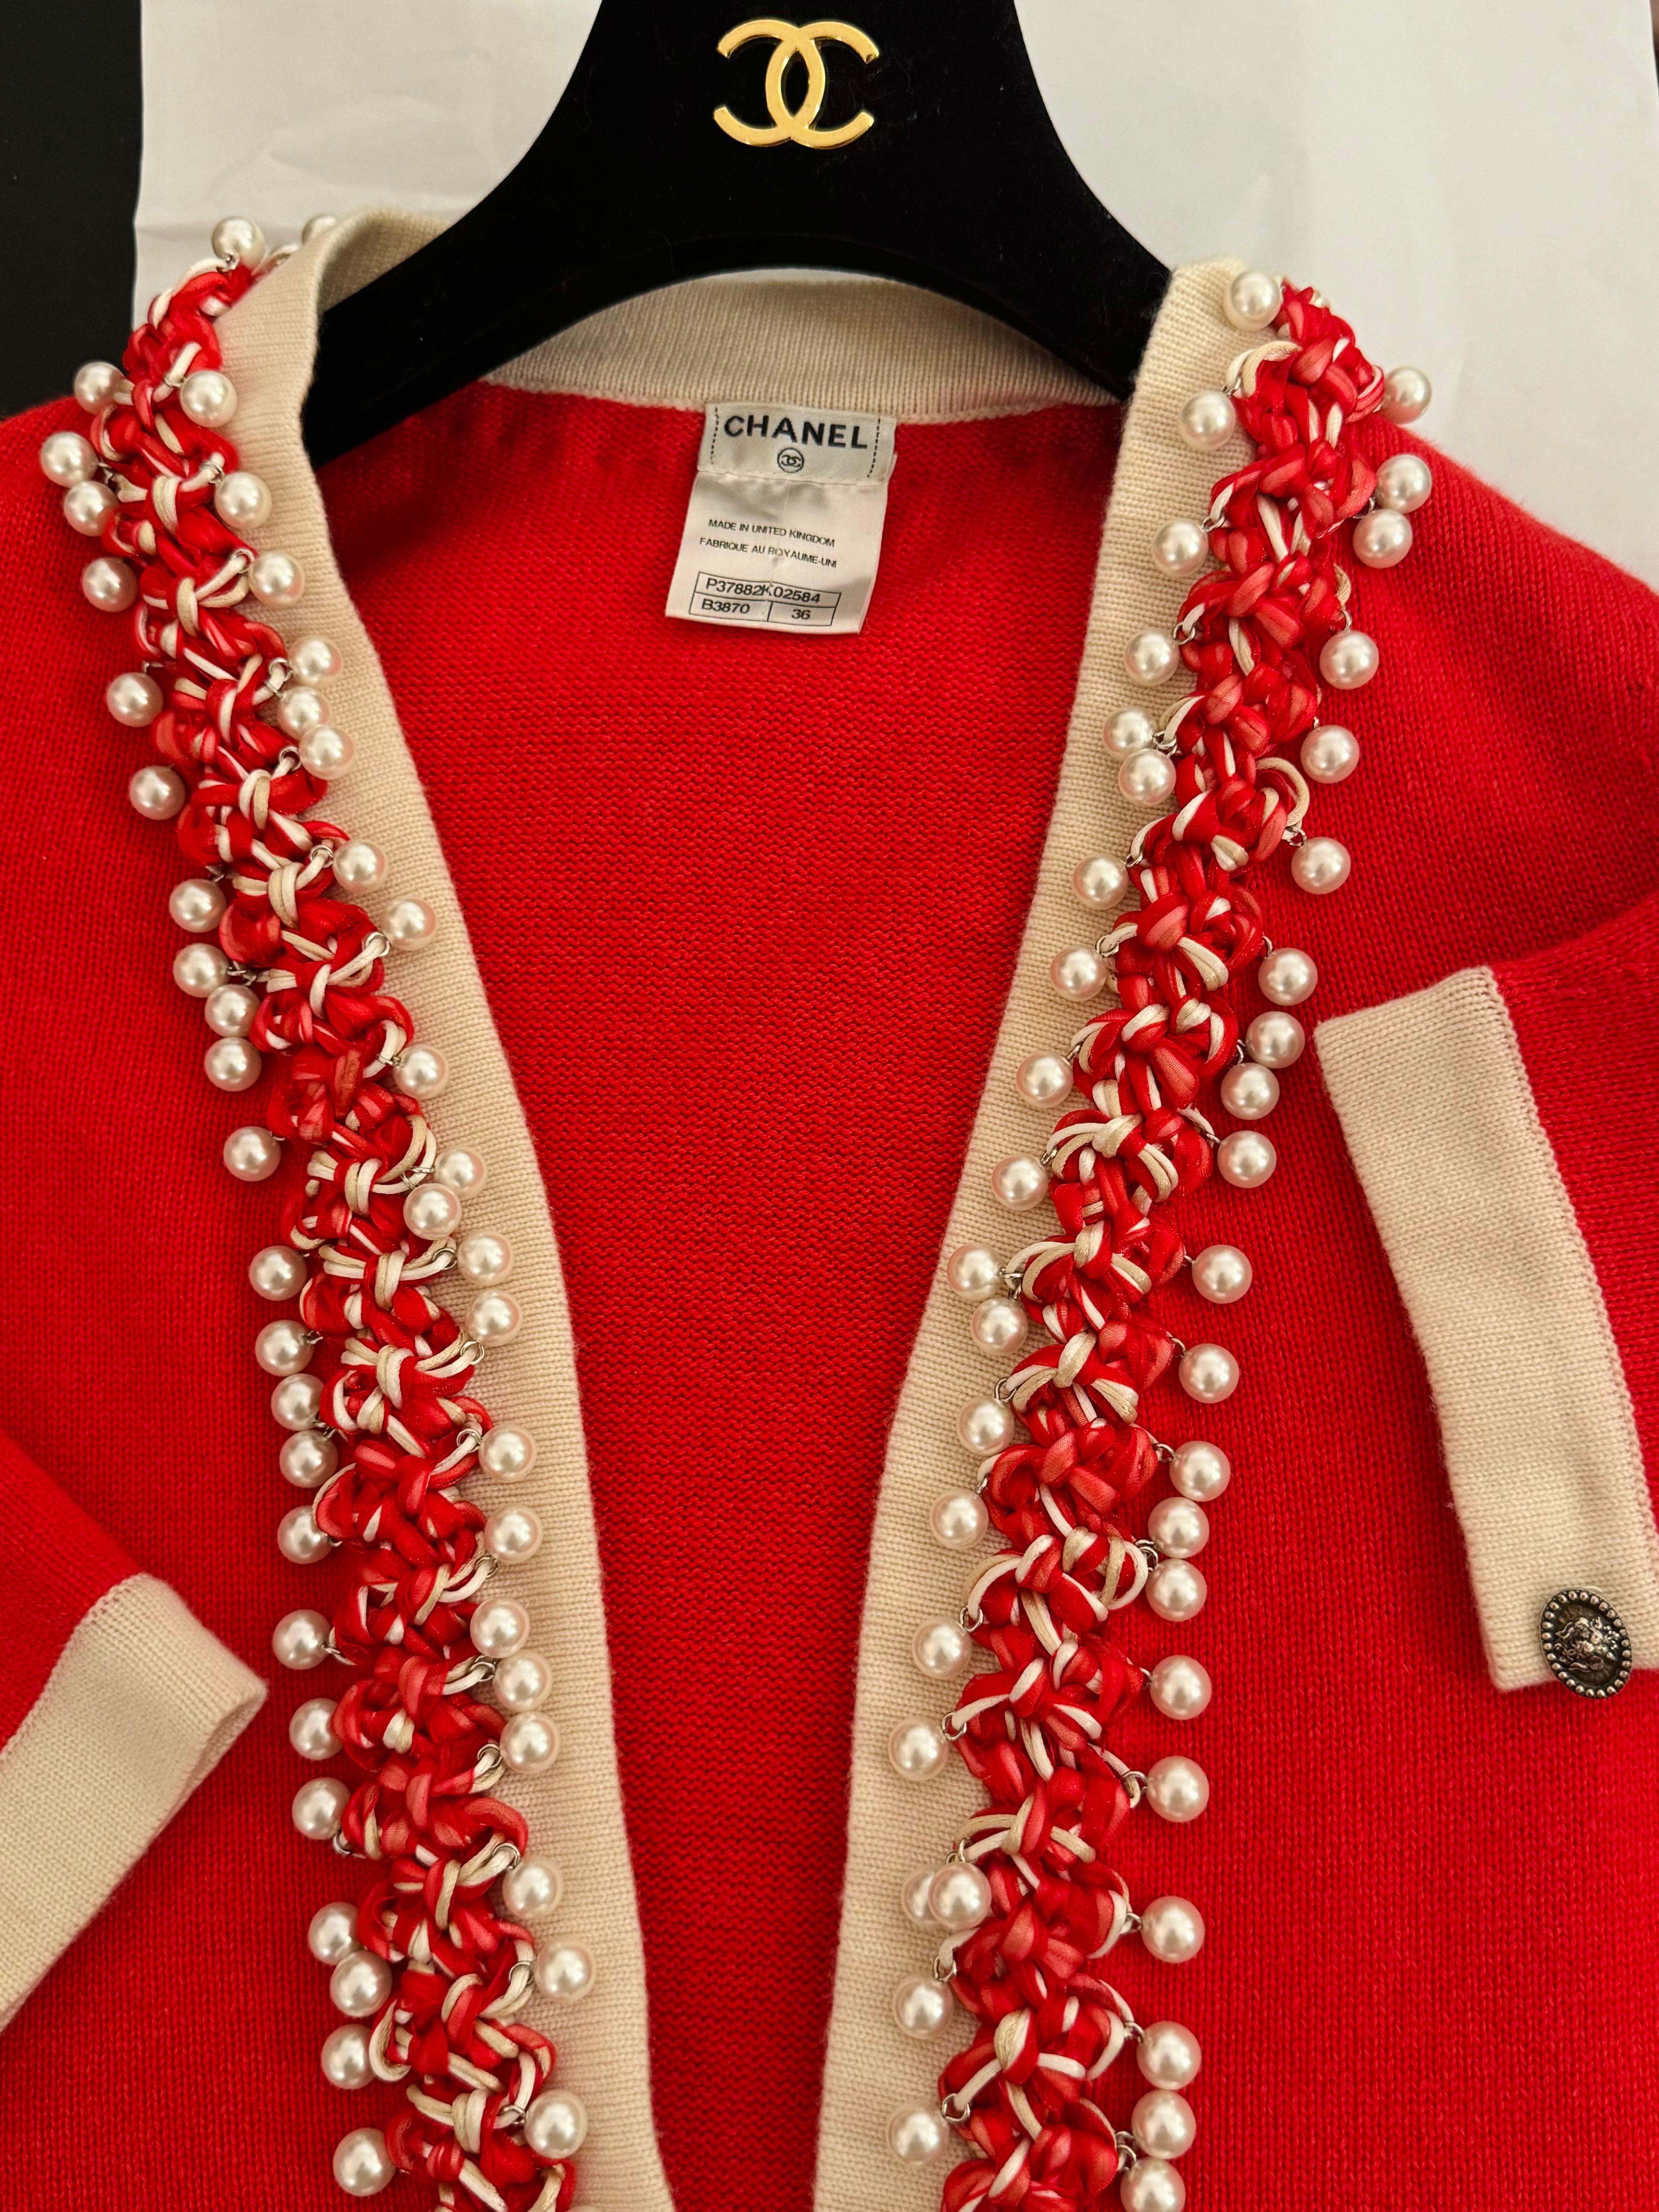 Chanel printemps 2010 cardigan en cachemire brodé de fausses perles taille 36 FR mais convient à des tailles allant de 2 US à 8 US matière extensible et ouverte 